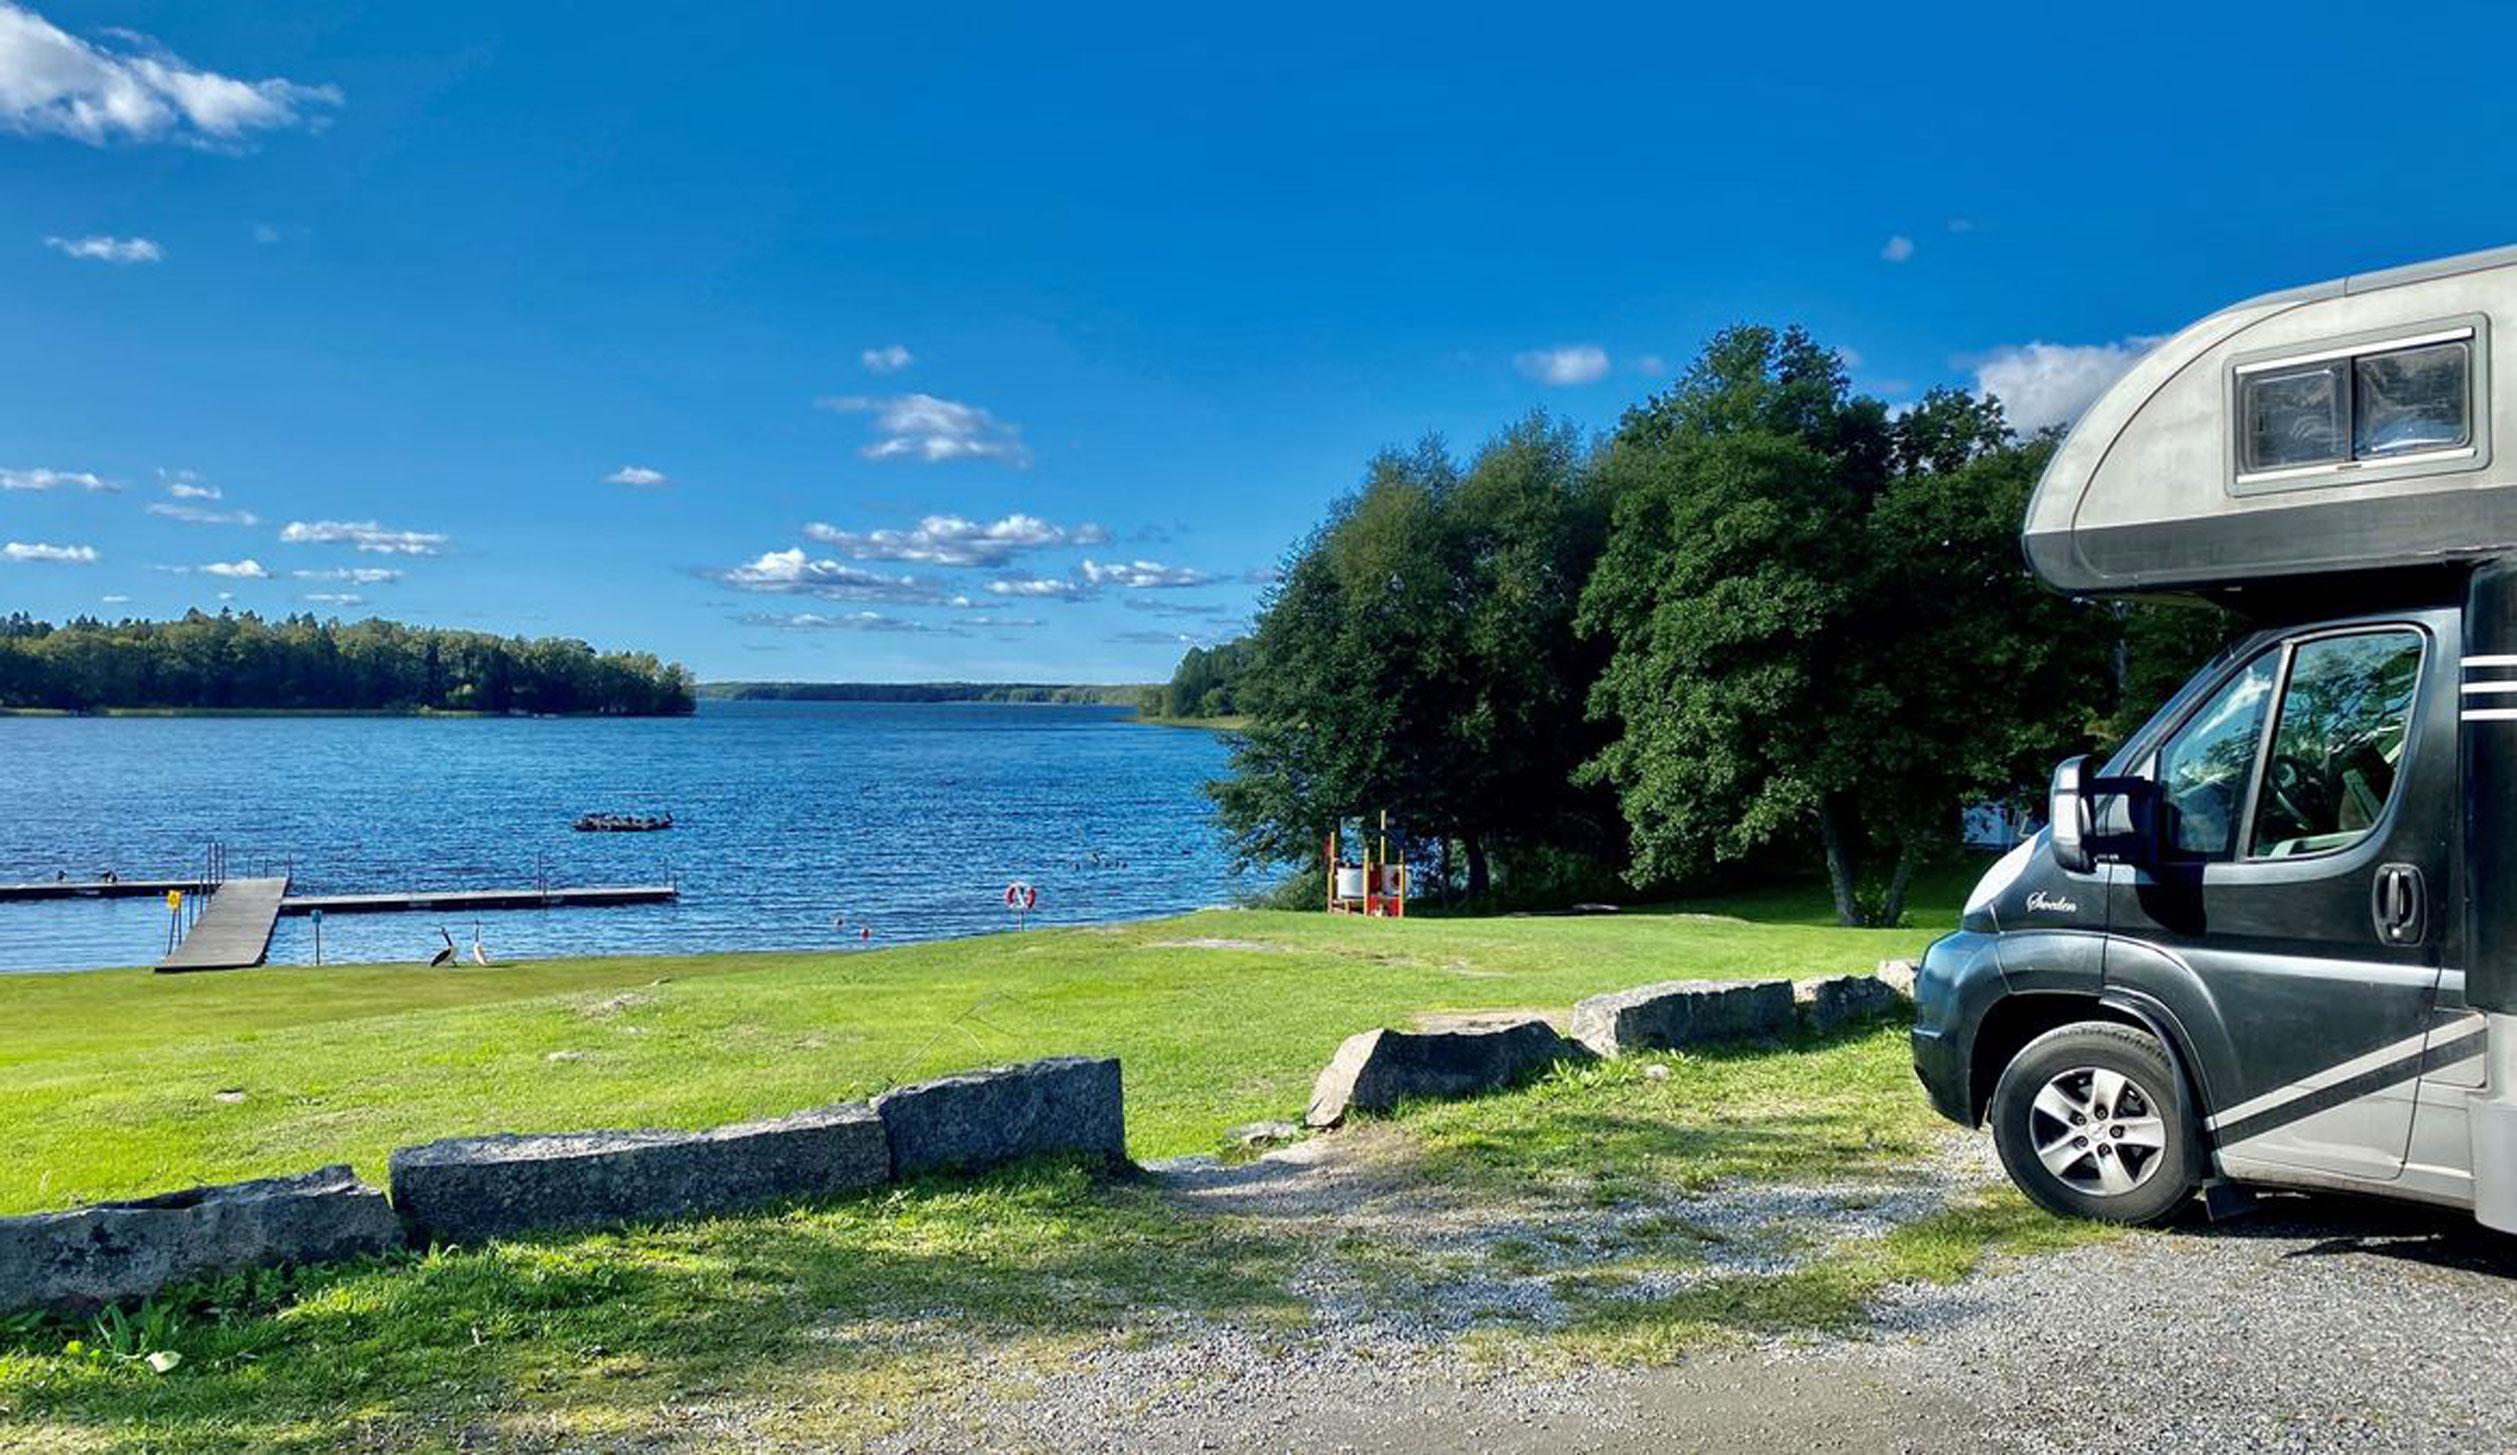 In Schweden darfst du auf Schotter an einem See parken, wenn es keine örtlichen Einschränkungen gibt.